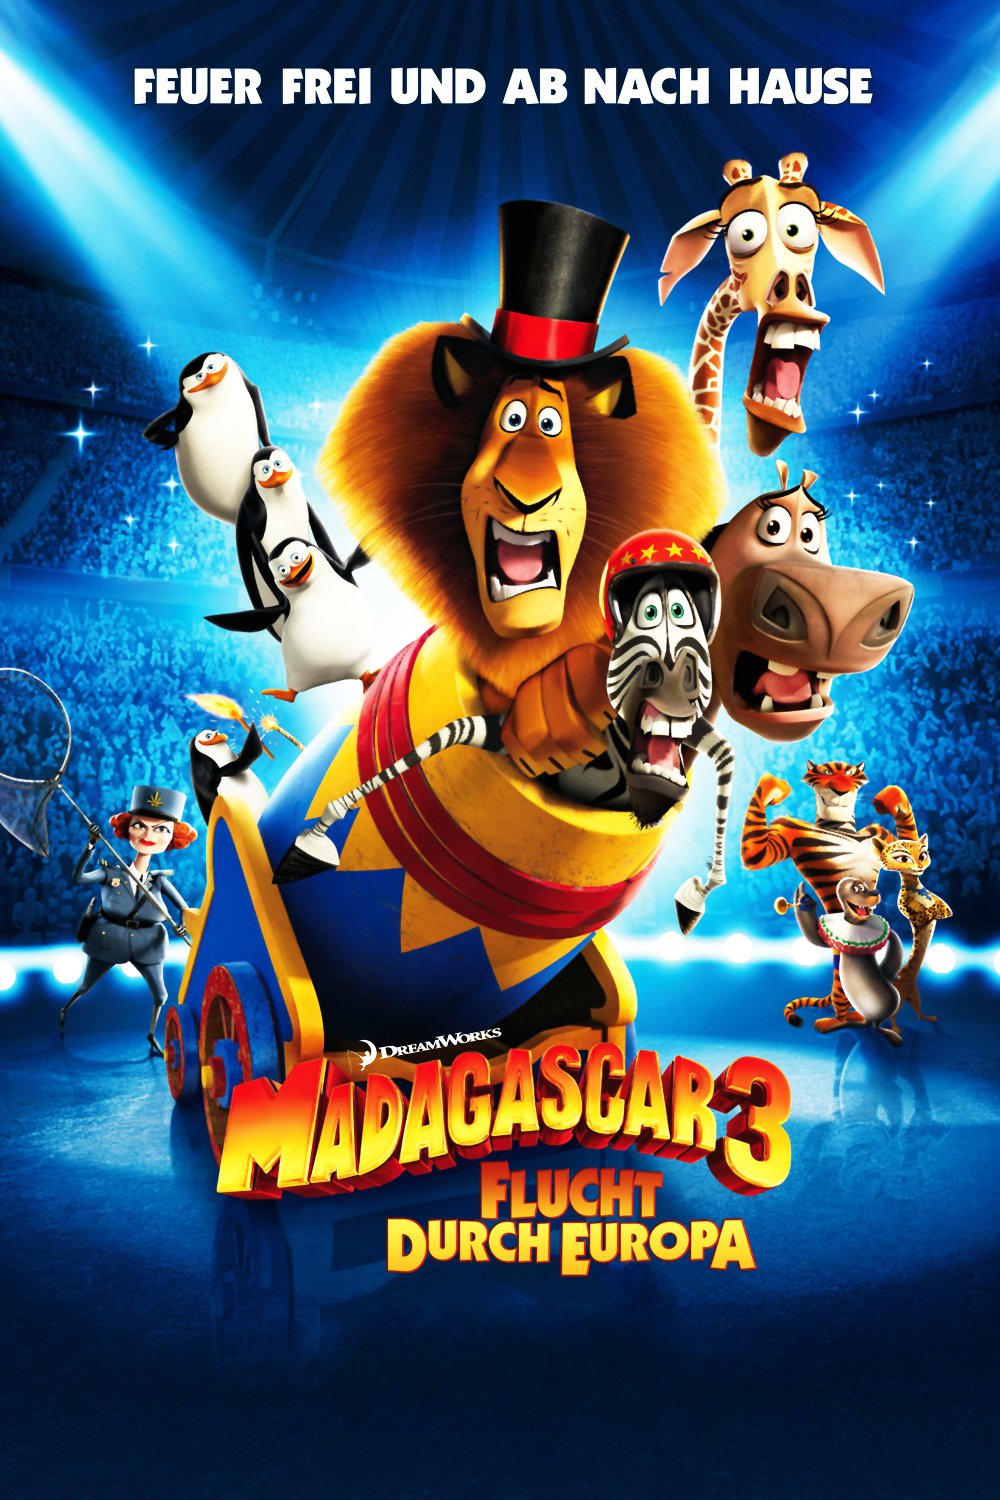 Plakat von "Madagascar 3 - Flucht durch Europa"